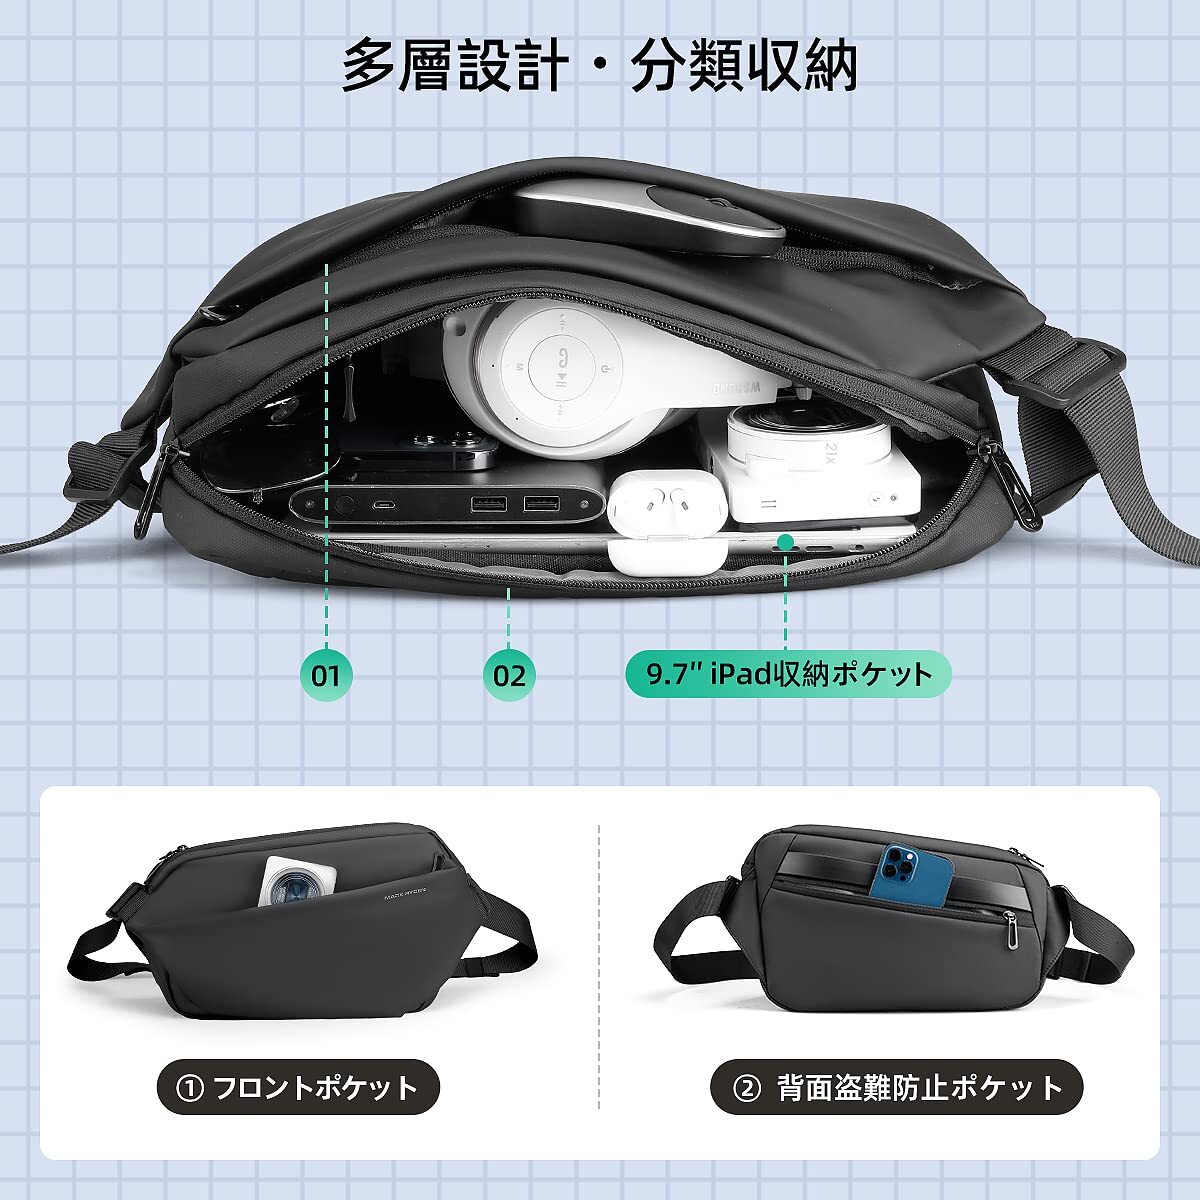 【クーポン対象外】 ☆多機能 ボディバッグ 3選択可能 操作簡単 安全設計 高品質 3way ボディバッグ